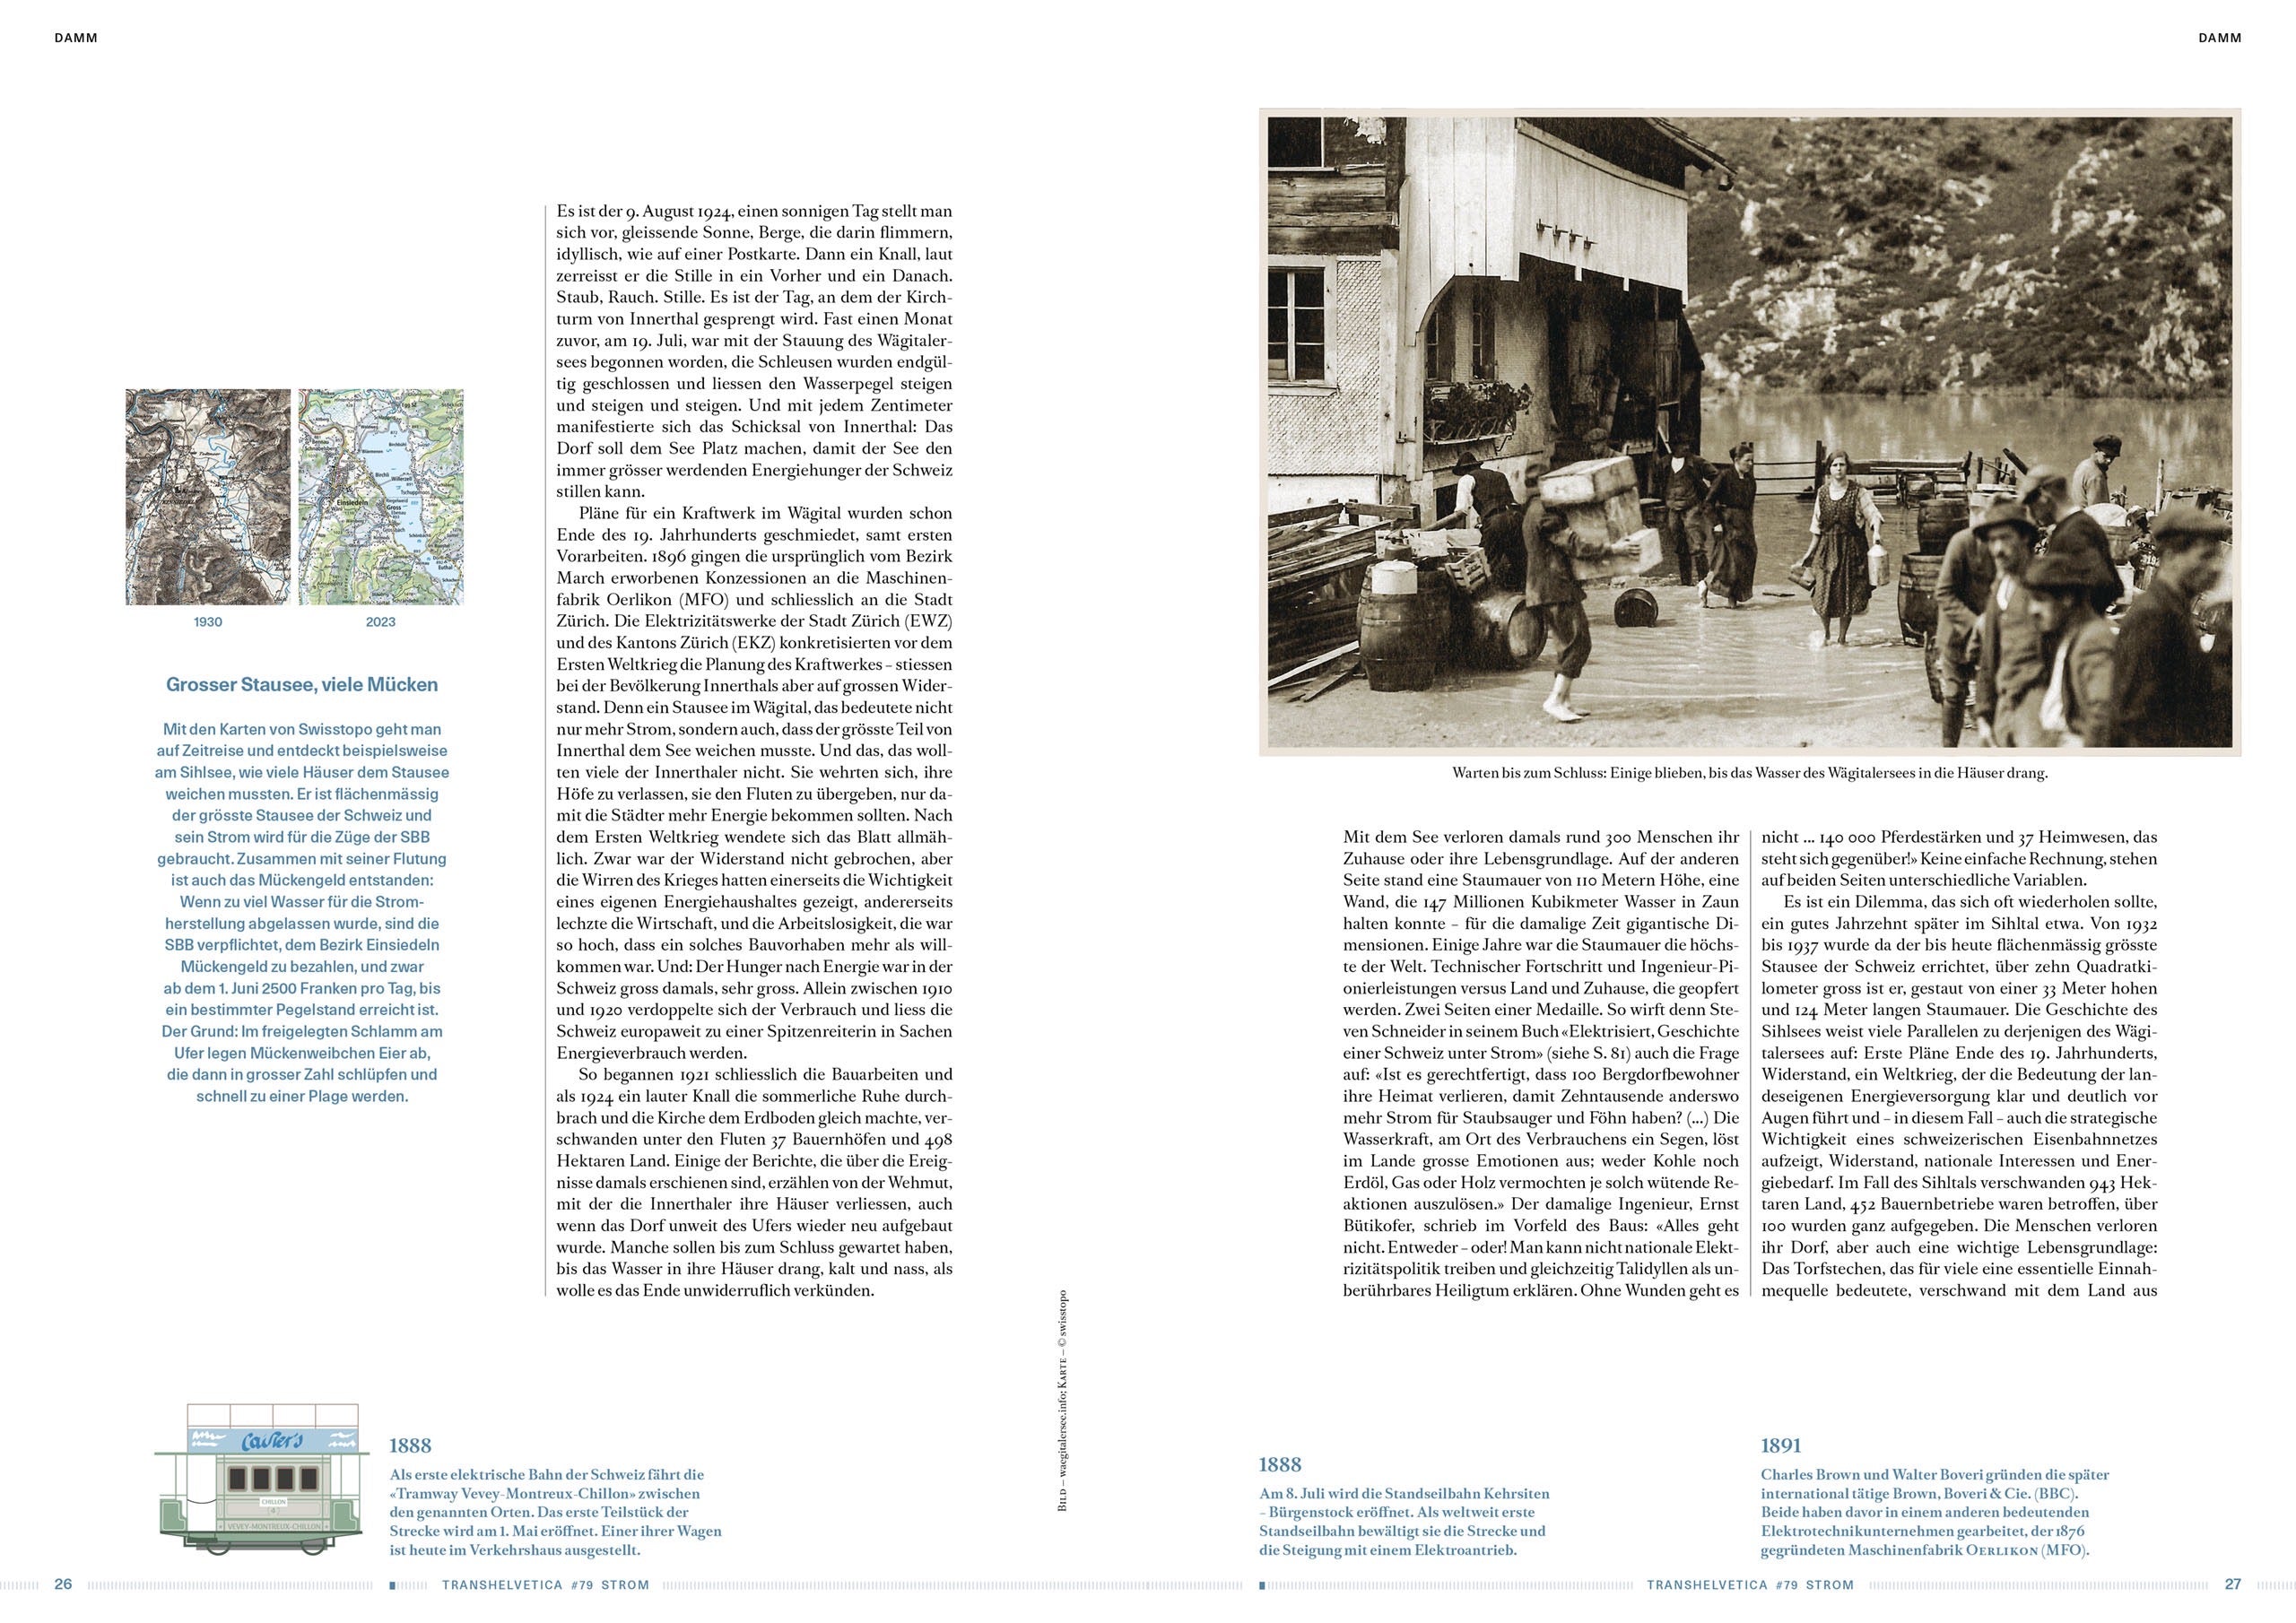 Transhelvetica präsentiert Ausgabe 79: Strom. Ein Magazin voller Geschichten mit Pfuus, erhältlich bei LABEL17